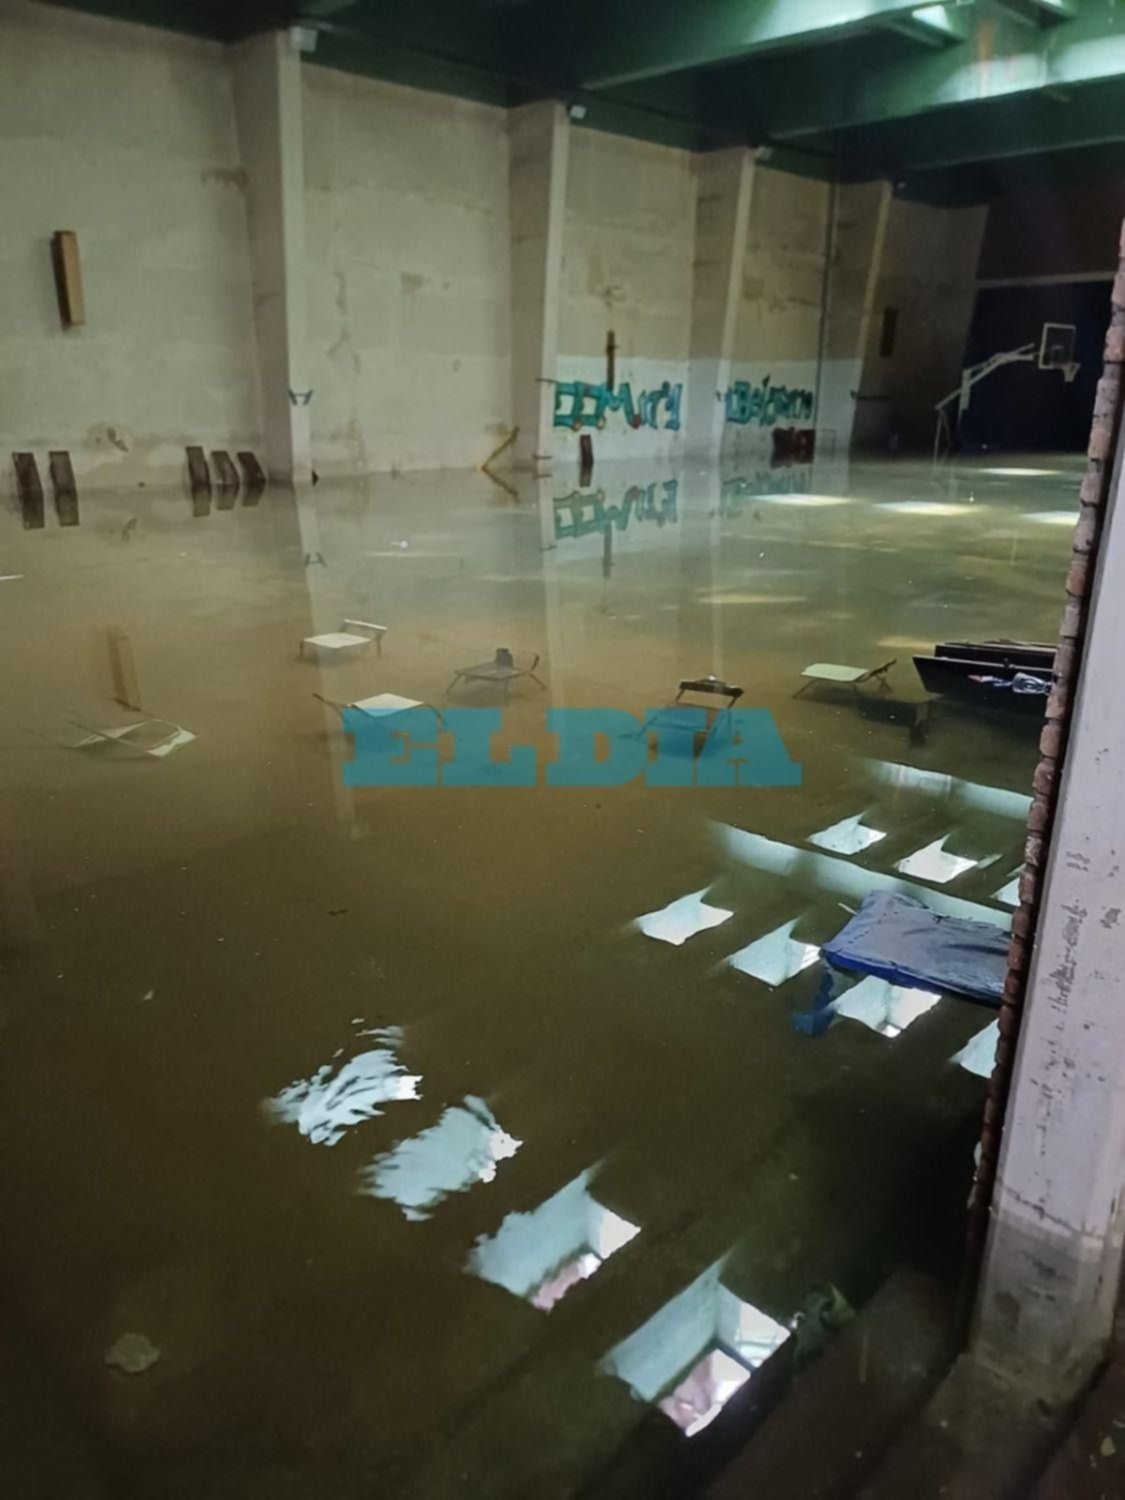 VIDEO.- En La Plata, una escuela "subacuática": se les inundó el gimnasio por fallas de la bomba y suspendieron las clases